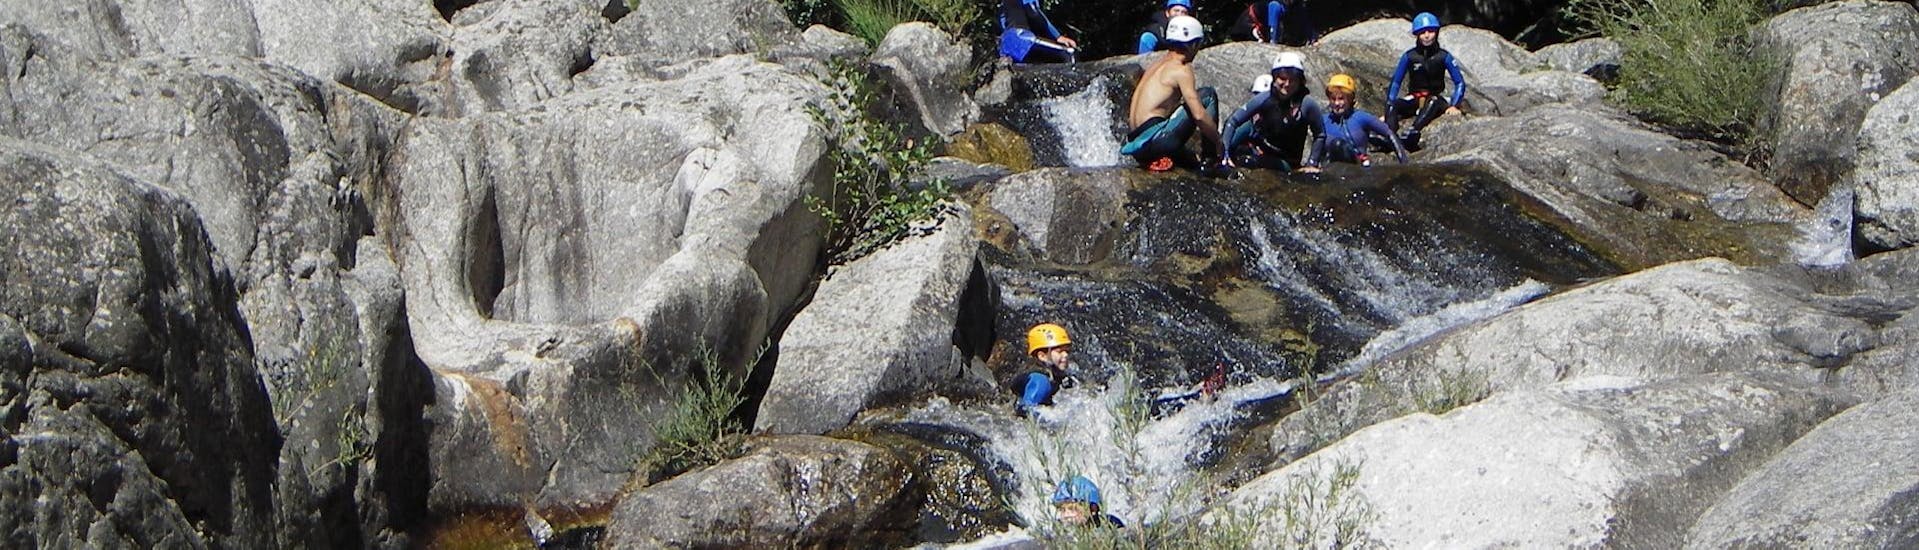 Les gens explorent et escaladent le canyon pendant le Canyoning en Ardèche dans le Haut Chassezac - Découverte avec Cévèn Aventure.